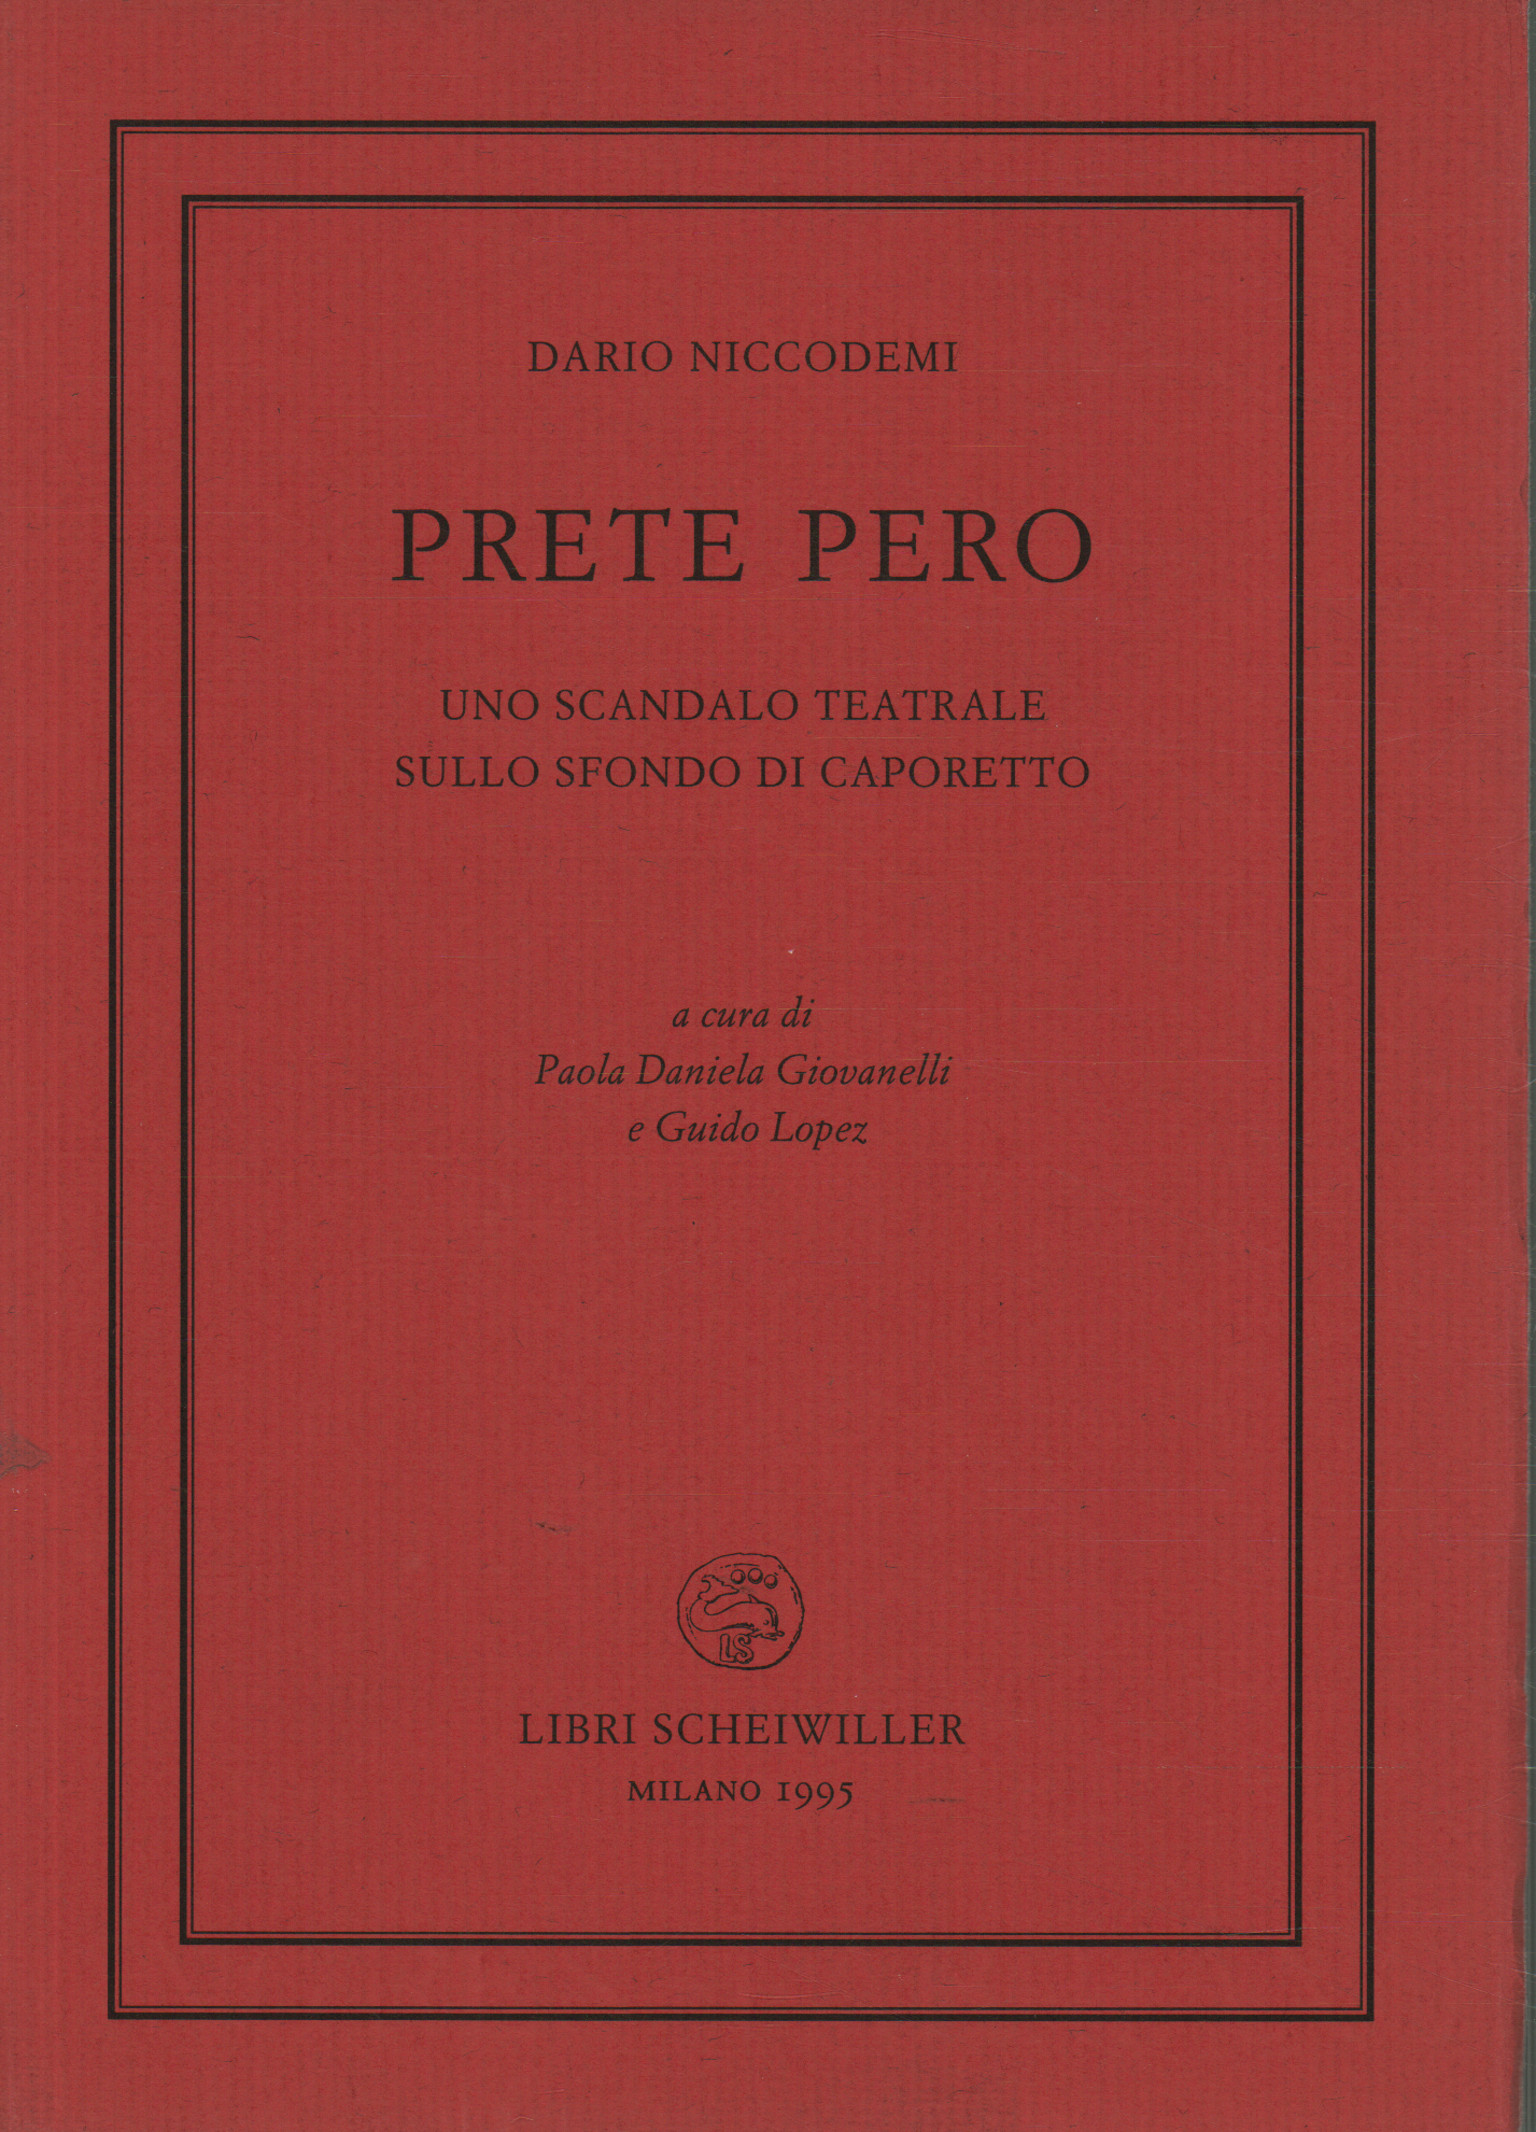 Prêtre Pero, Dario Niccodemi